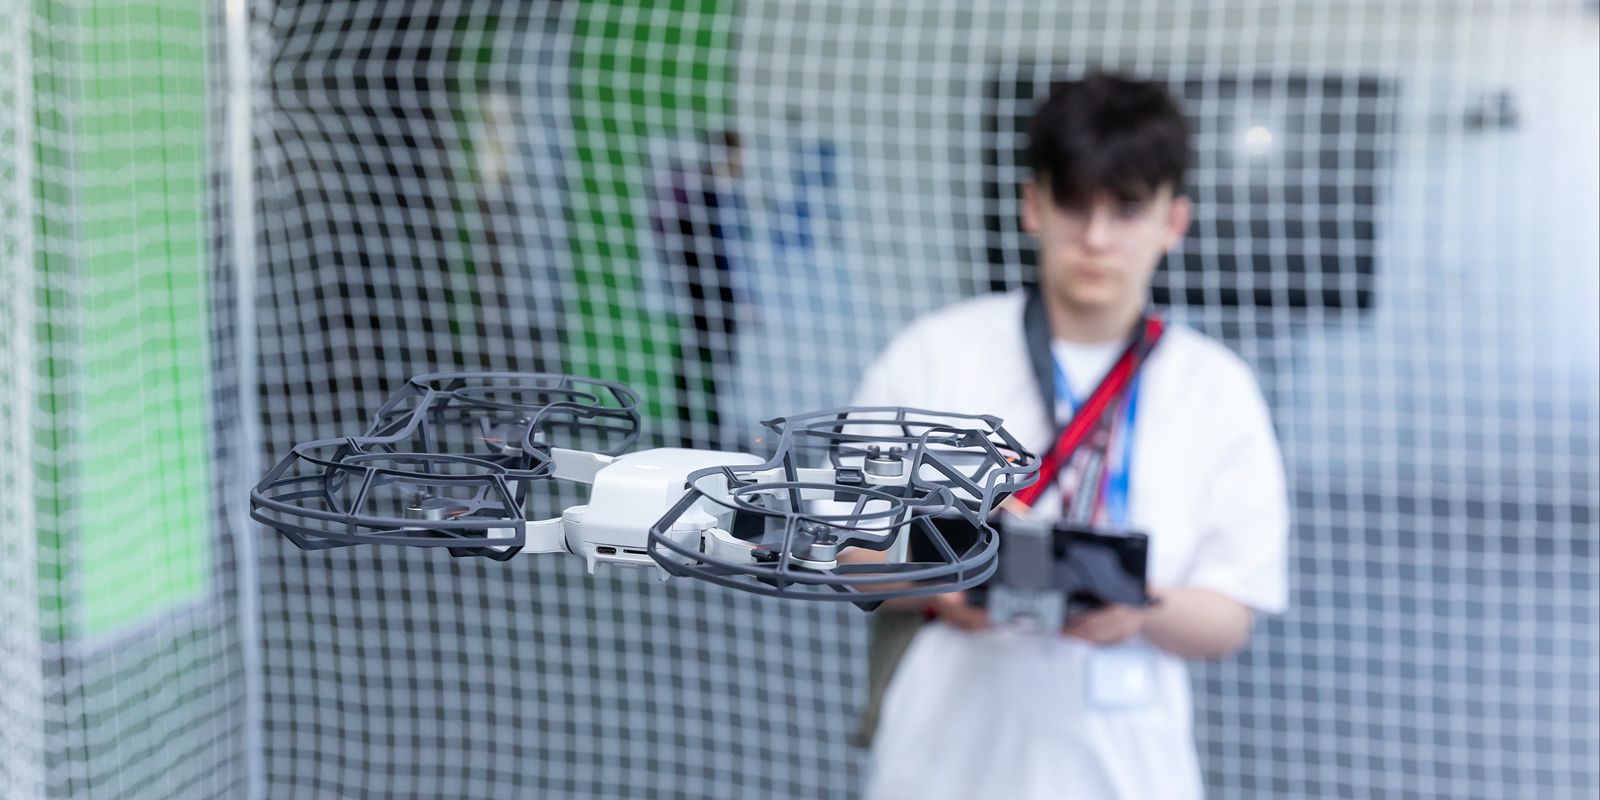 Московские школьники научатся управлять дронами на фестивале технического творчества